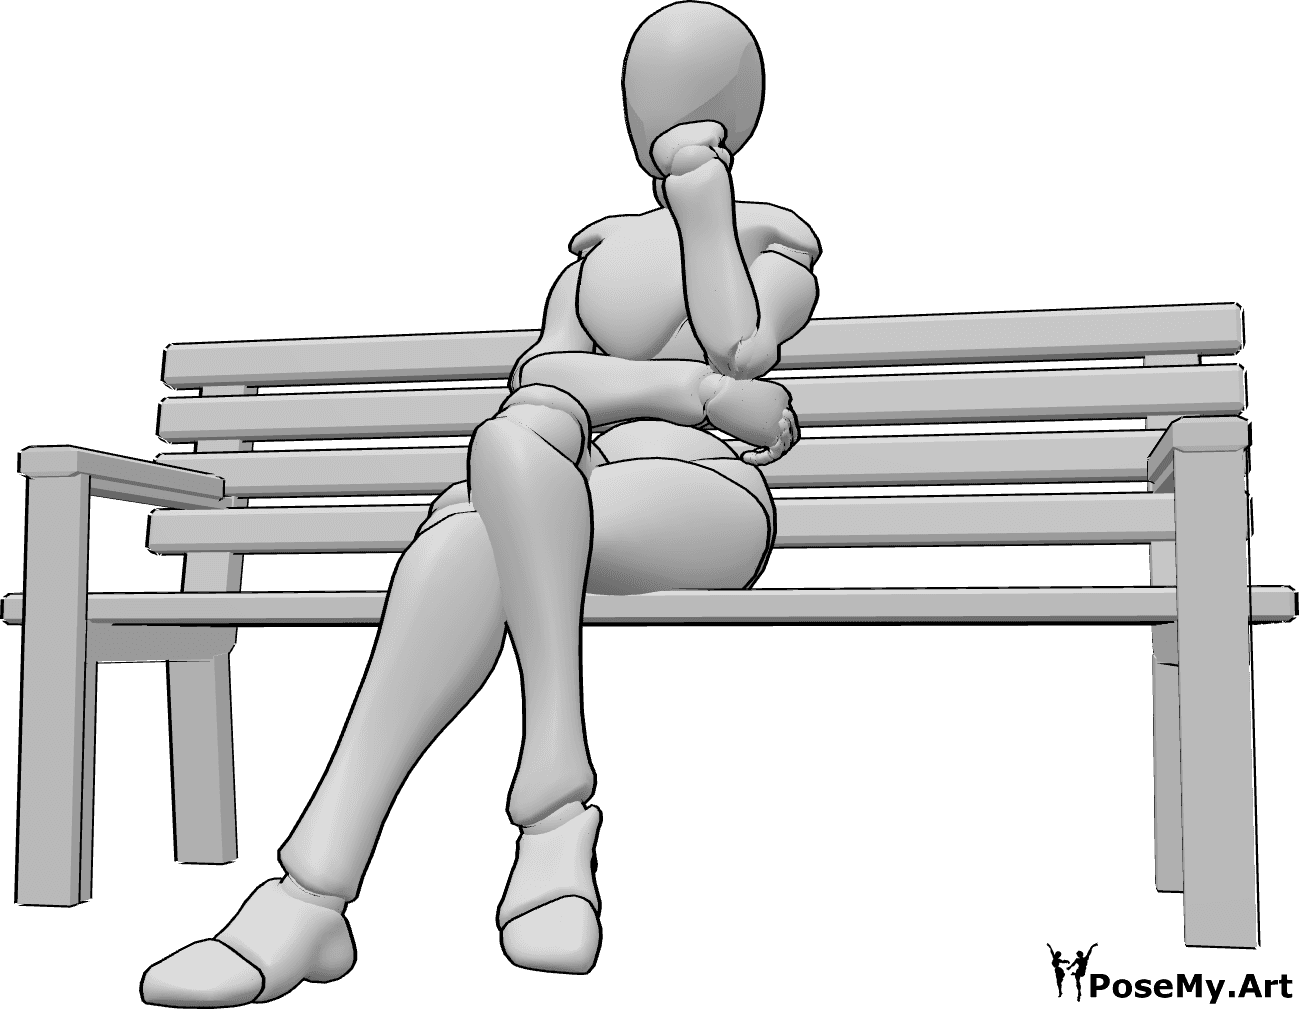 Referencia de poses- Postura del banco sentado - Mujer sentada en el banco con las piernas cruzadas